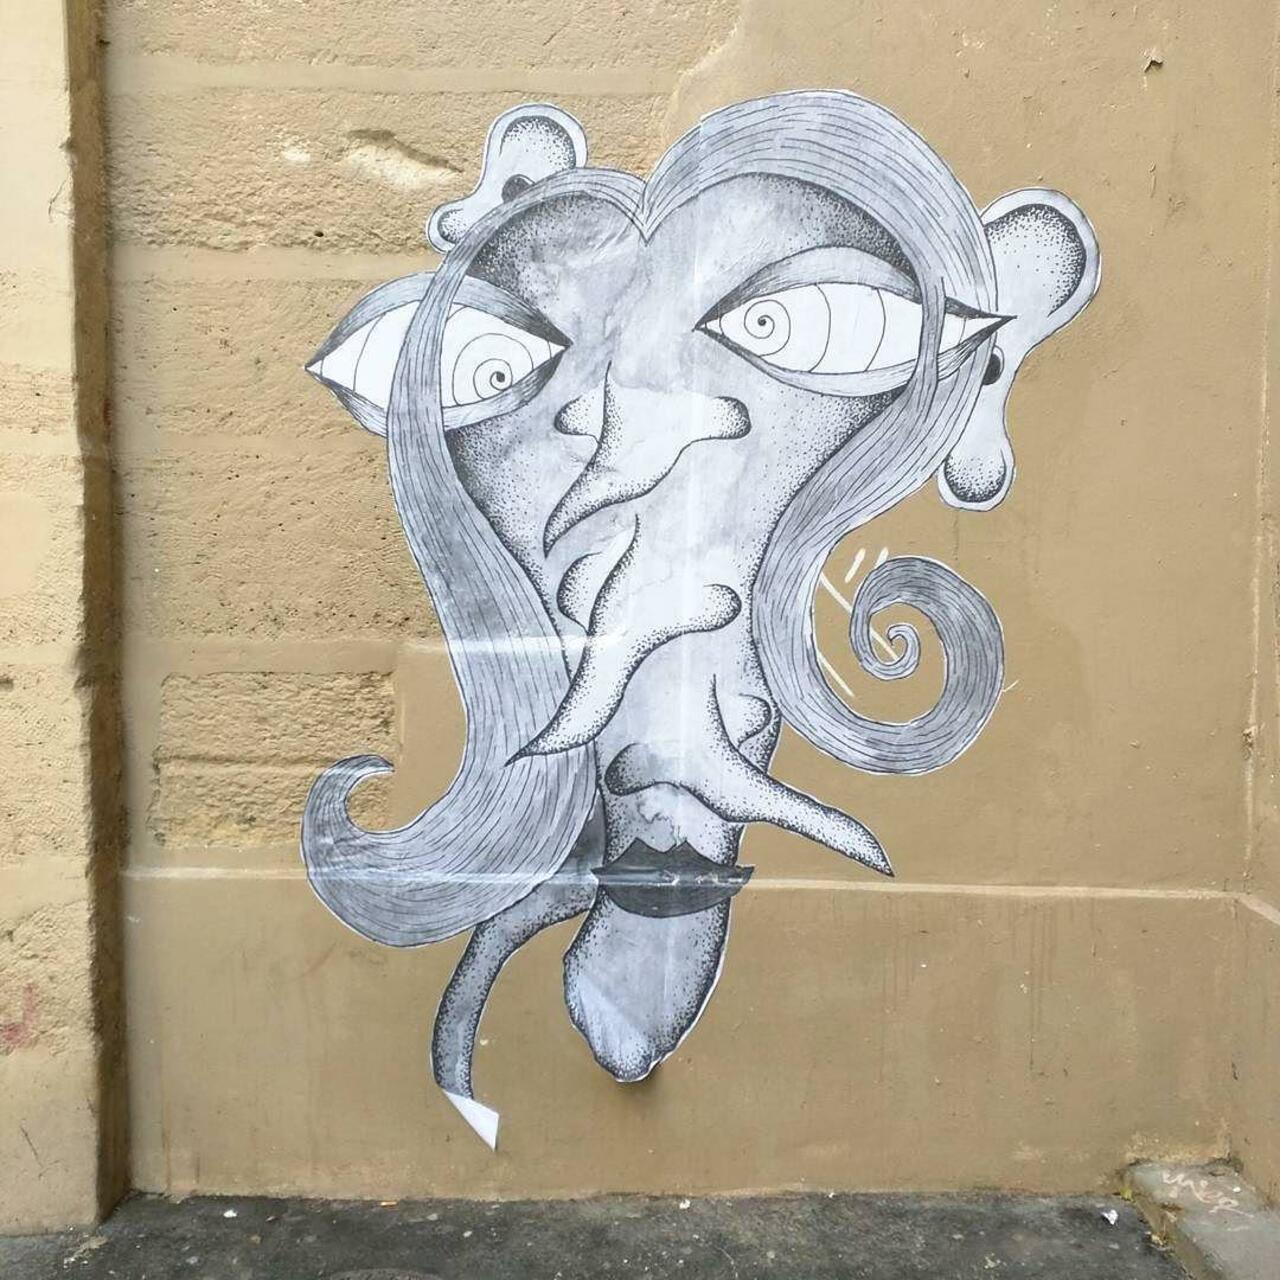 #Paris #graffiti photo by @alphaquadra http://ift.tt/1QX6ZCp #StreetArt http://t.co/Ir02fZYqnL